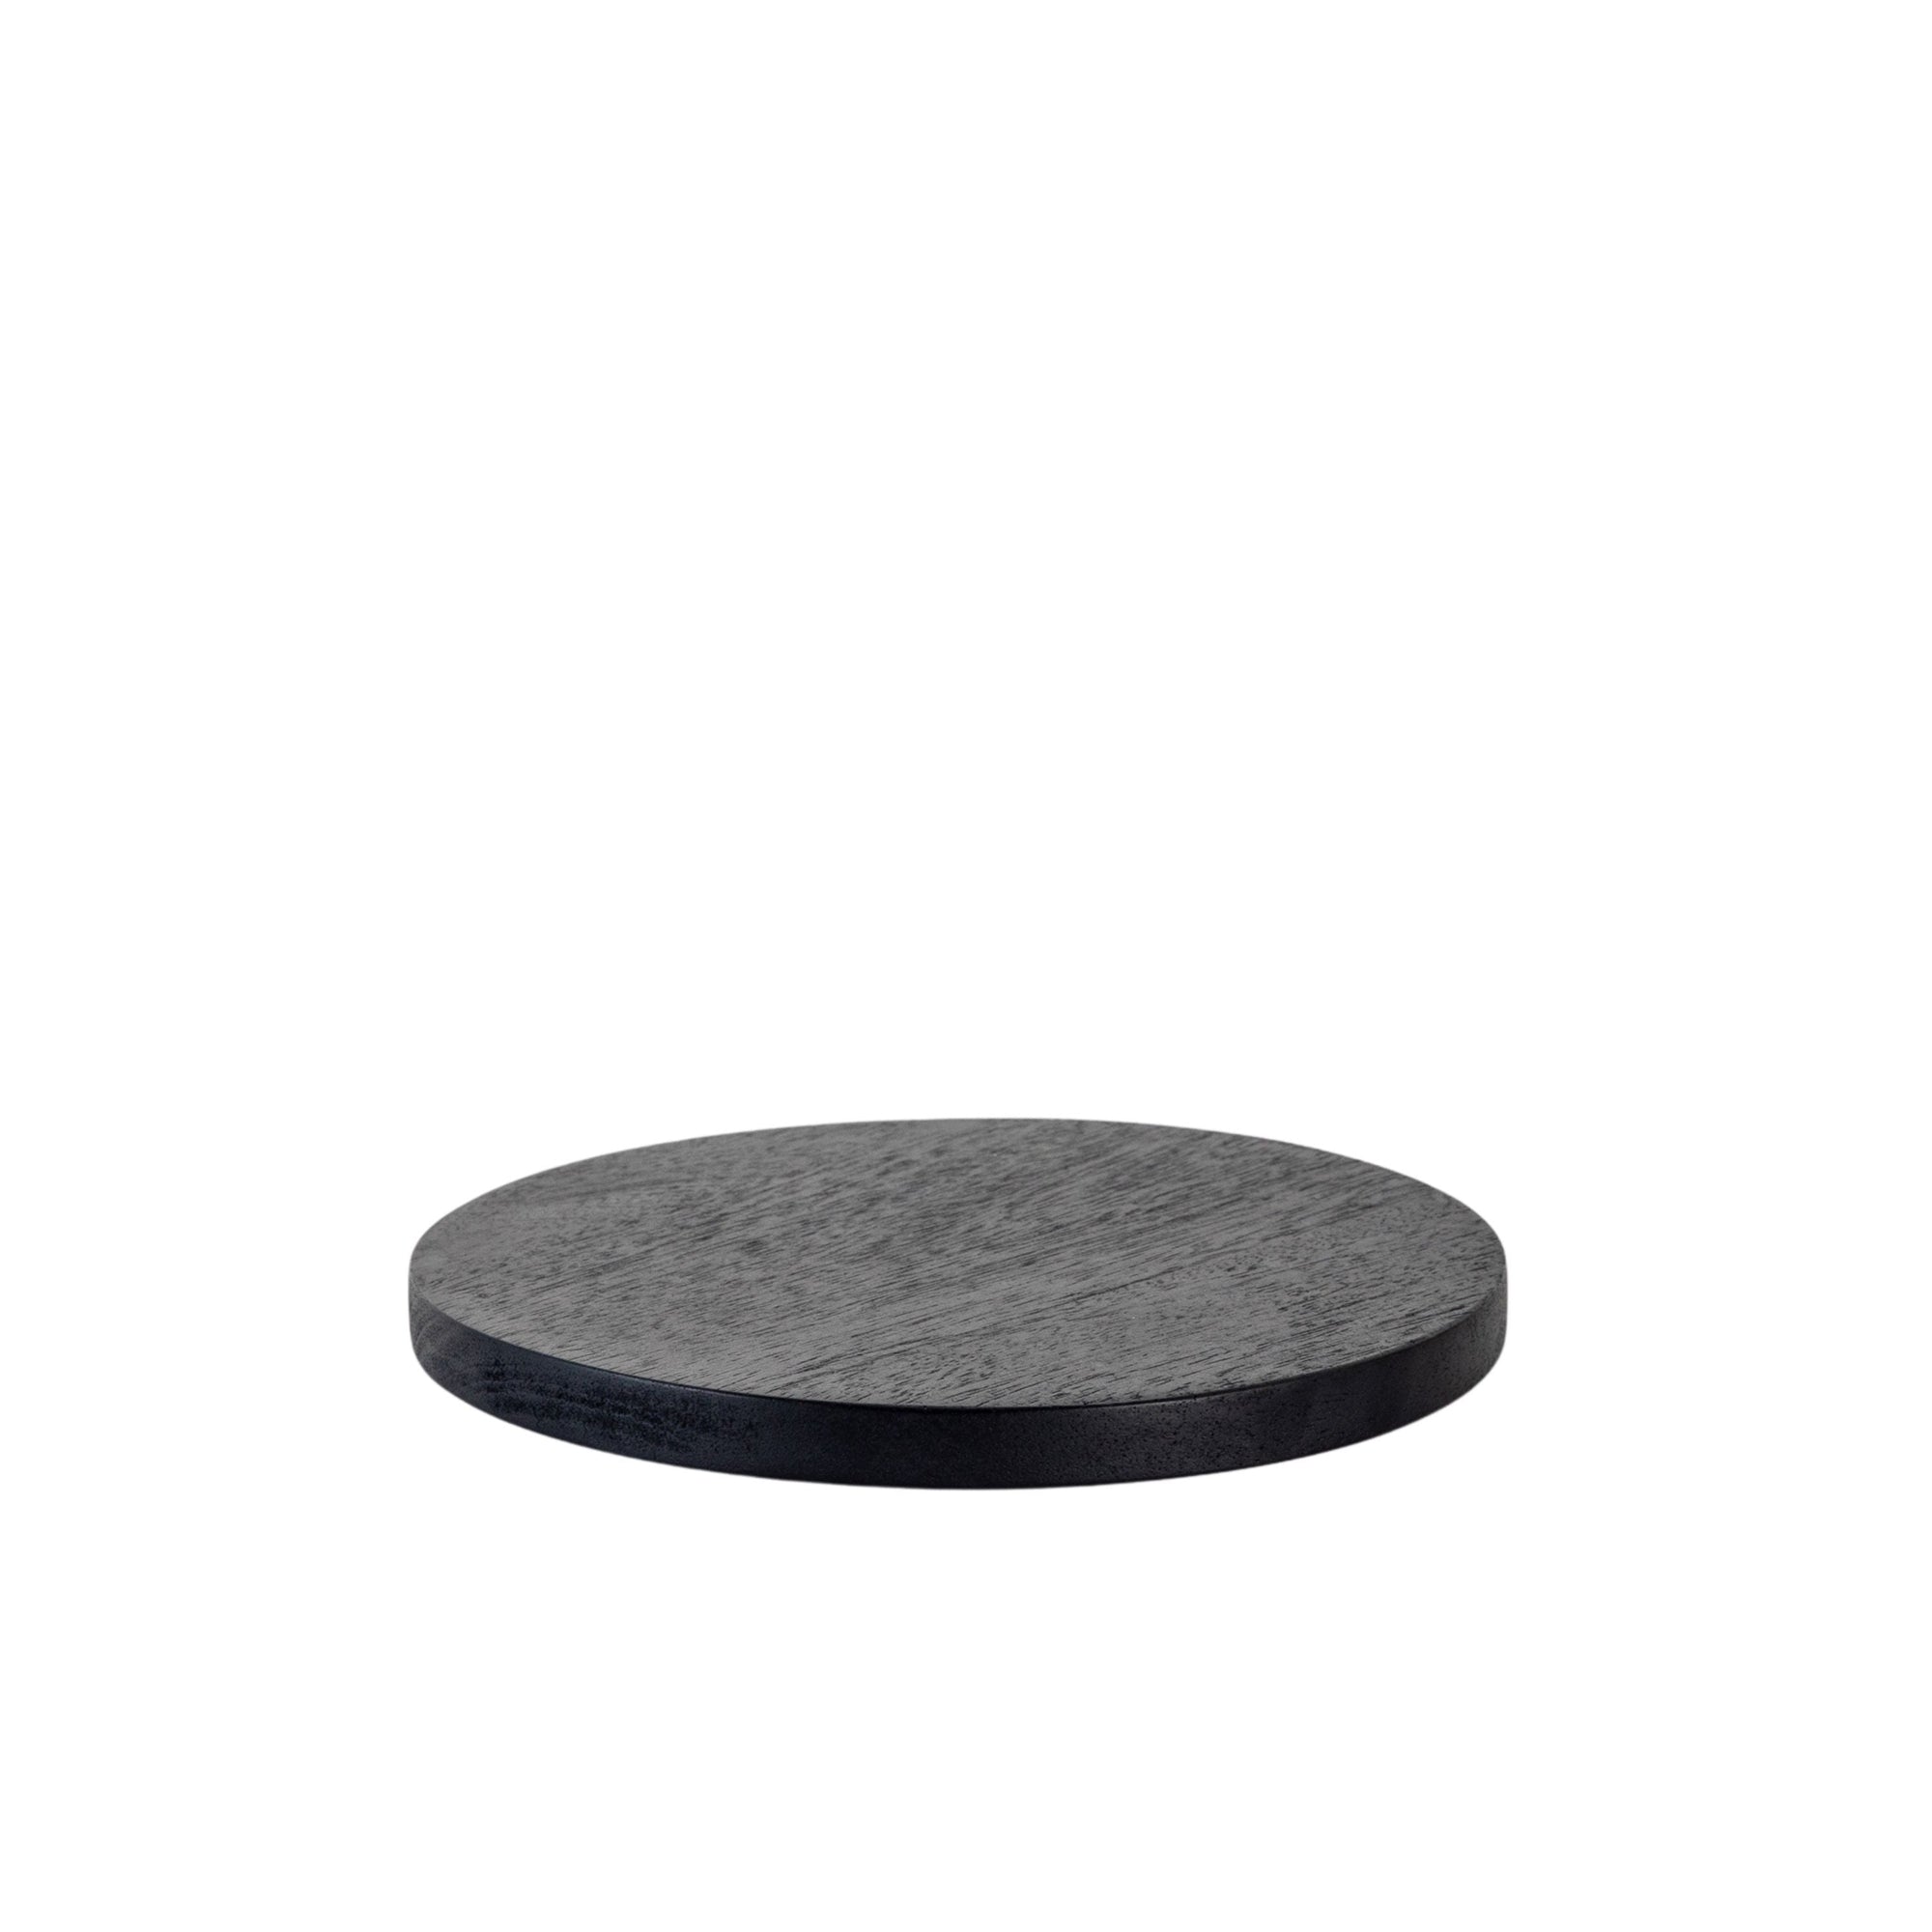 Round Black Annika Board - Small